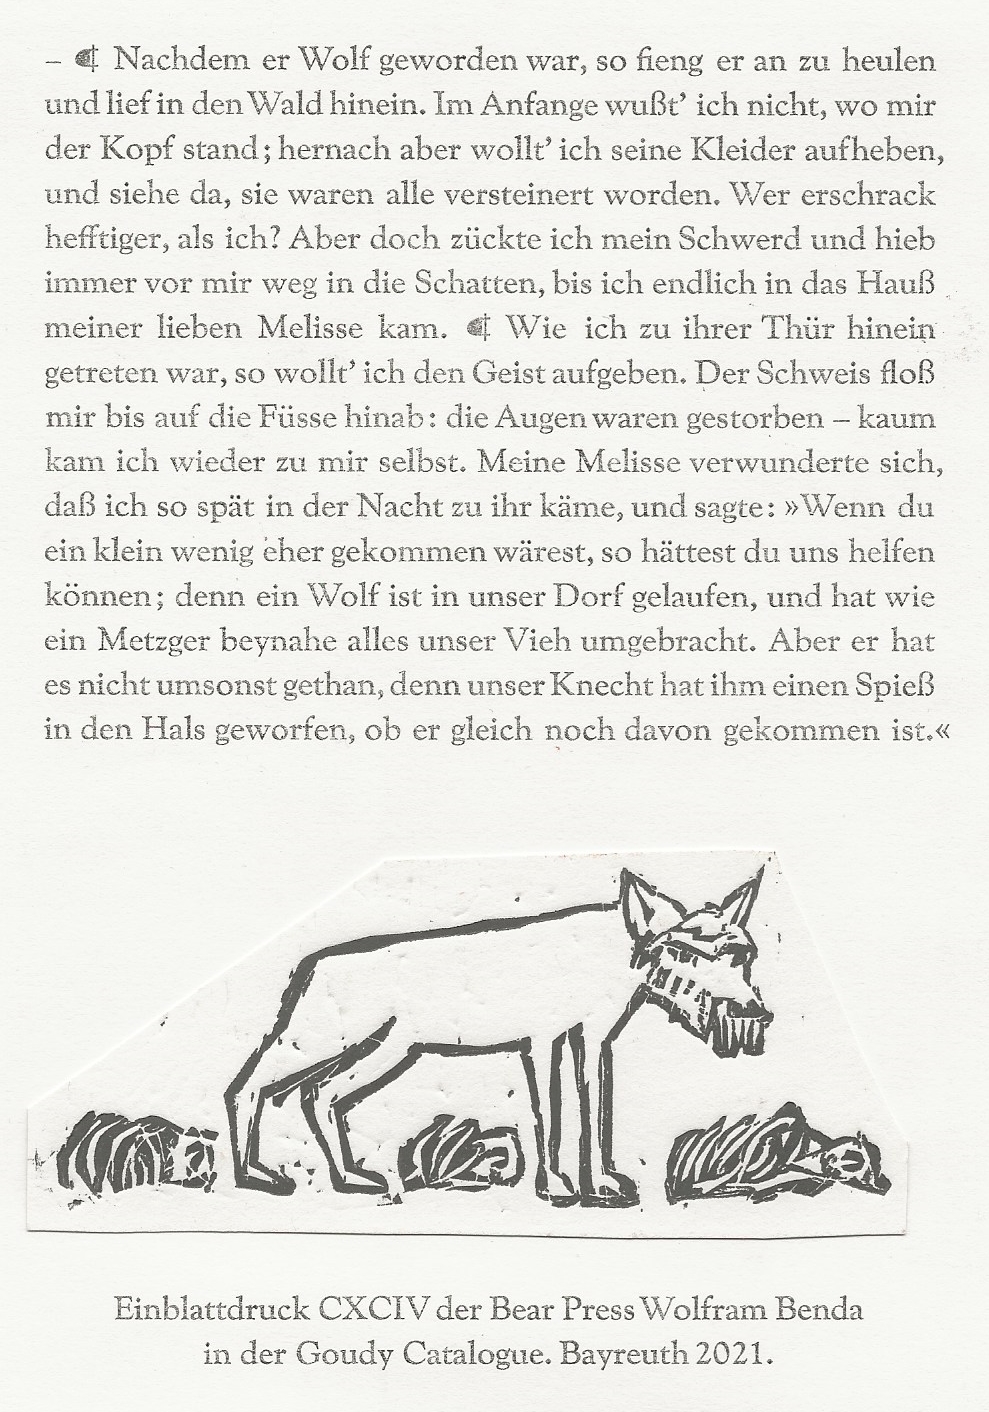 Petronius/Wilhelm Heinse. Der Werwolf.